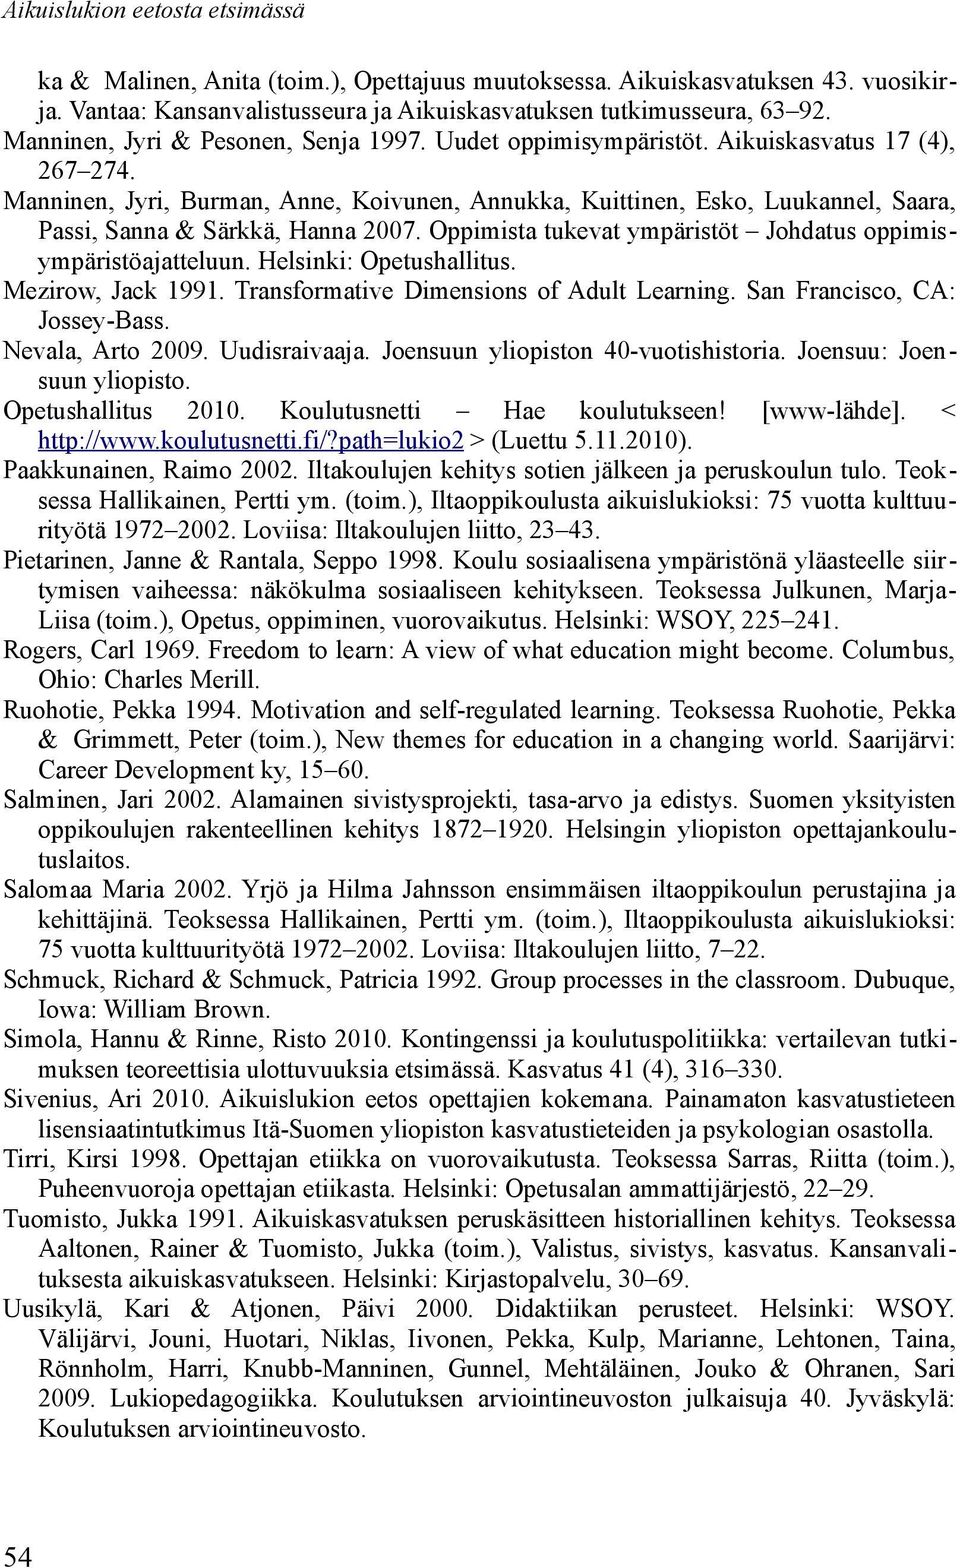 Manninen, Jyri, Burman, Anne, Koivunen, Annukka, Kuittinen, Esko, Luukannel, Saara, Passi, Sanna & Särkkä, Hanna 2007. Oppimista tukevat ympäristöt Johdatus oppimisympäristöajatteluun.